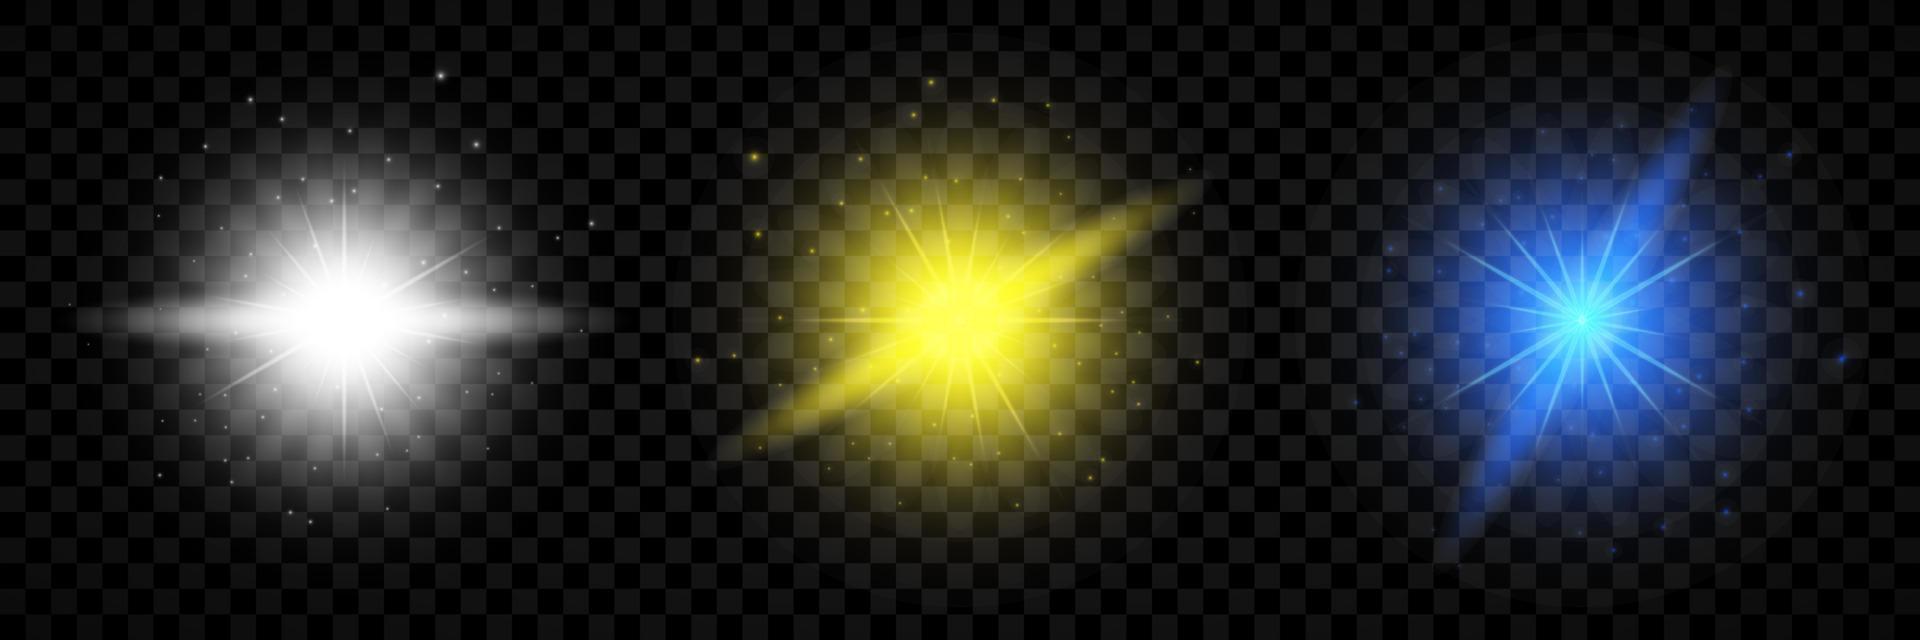 efeito de luz de reflexos de lente. conjunto de três luzes brilhantes brancas, amarelas e azuis efeitos starburst com brilhos vetor